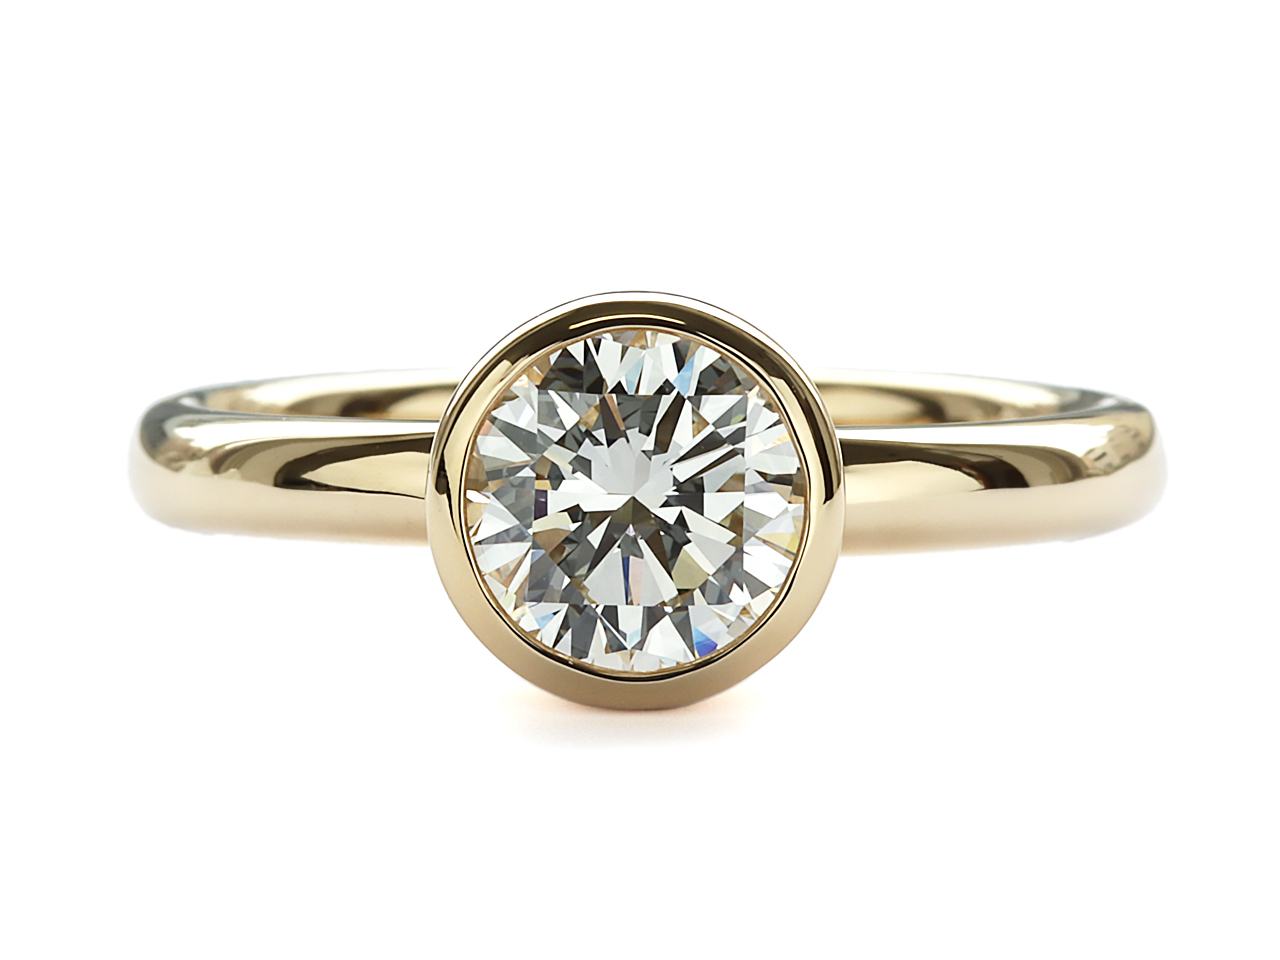 婚約指輪とは別のシーンで使えるダイヤモンドリングにリフォーム